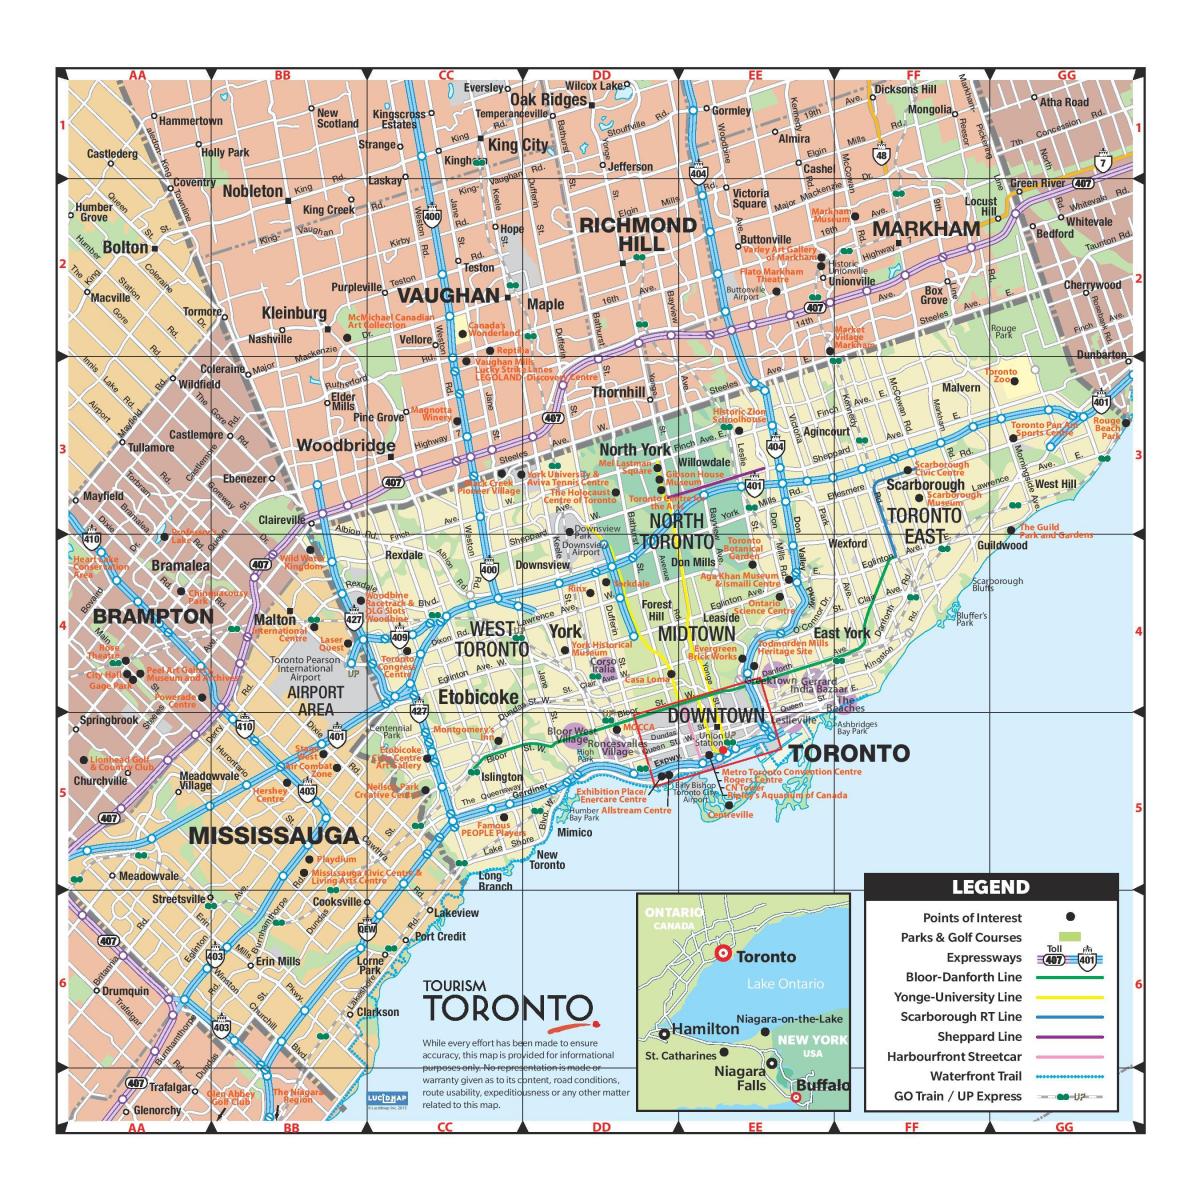 Kort greater Toronto area